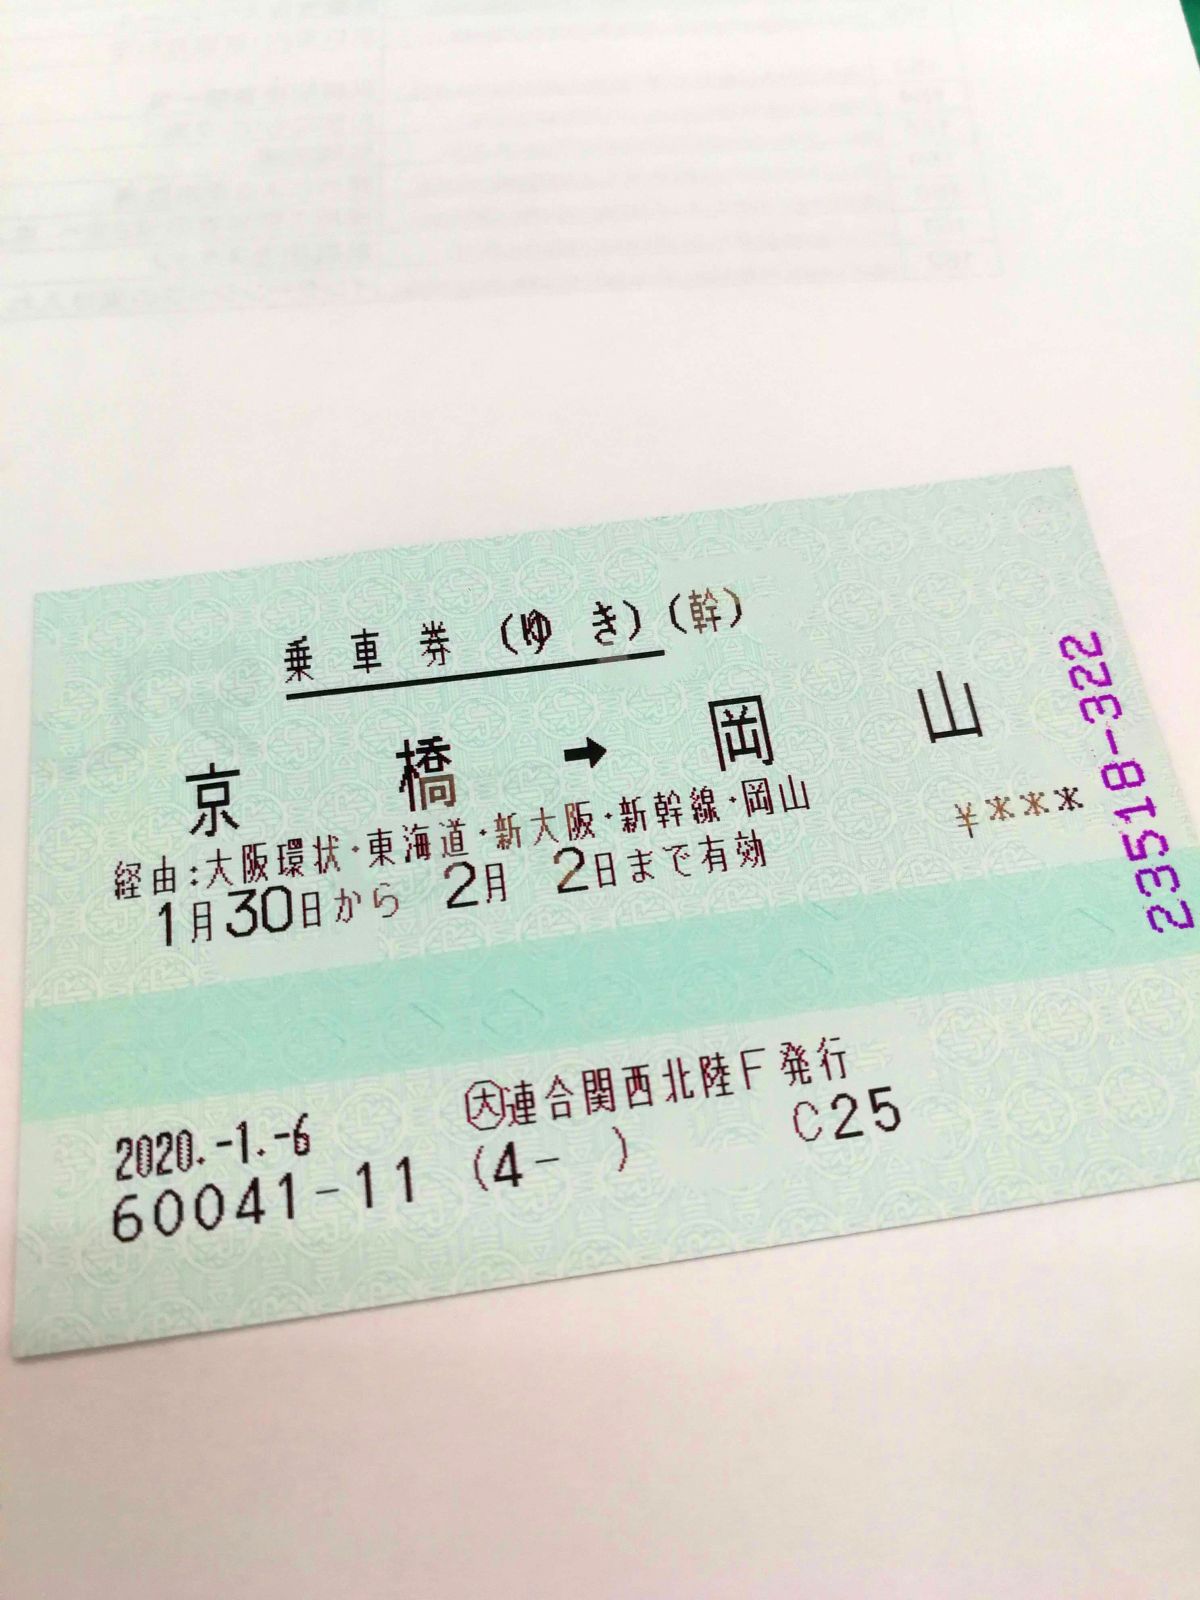 経由：大阪環状・東海道・新大阪・新幹線・岡山